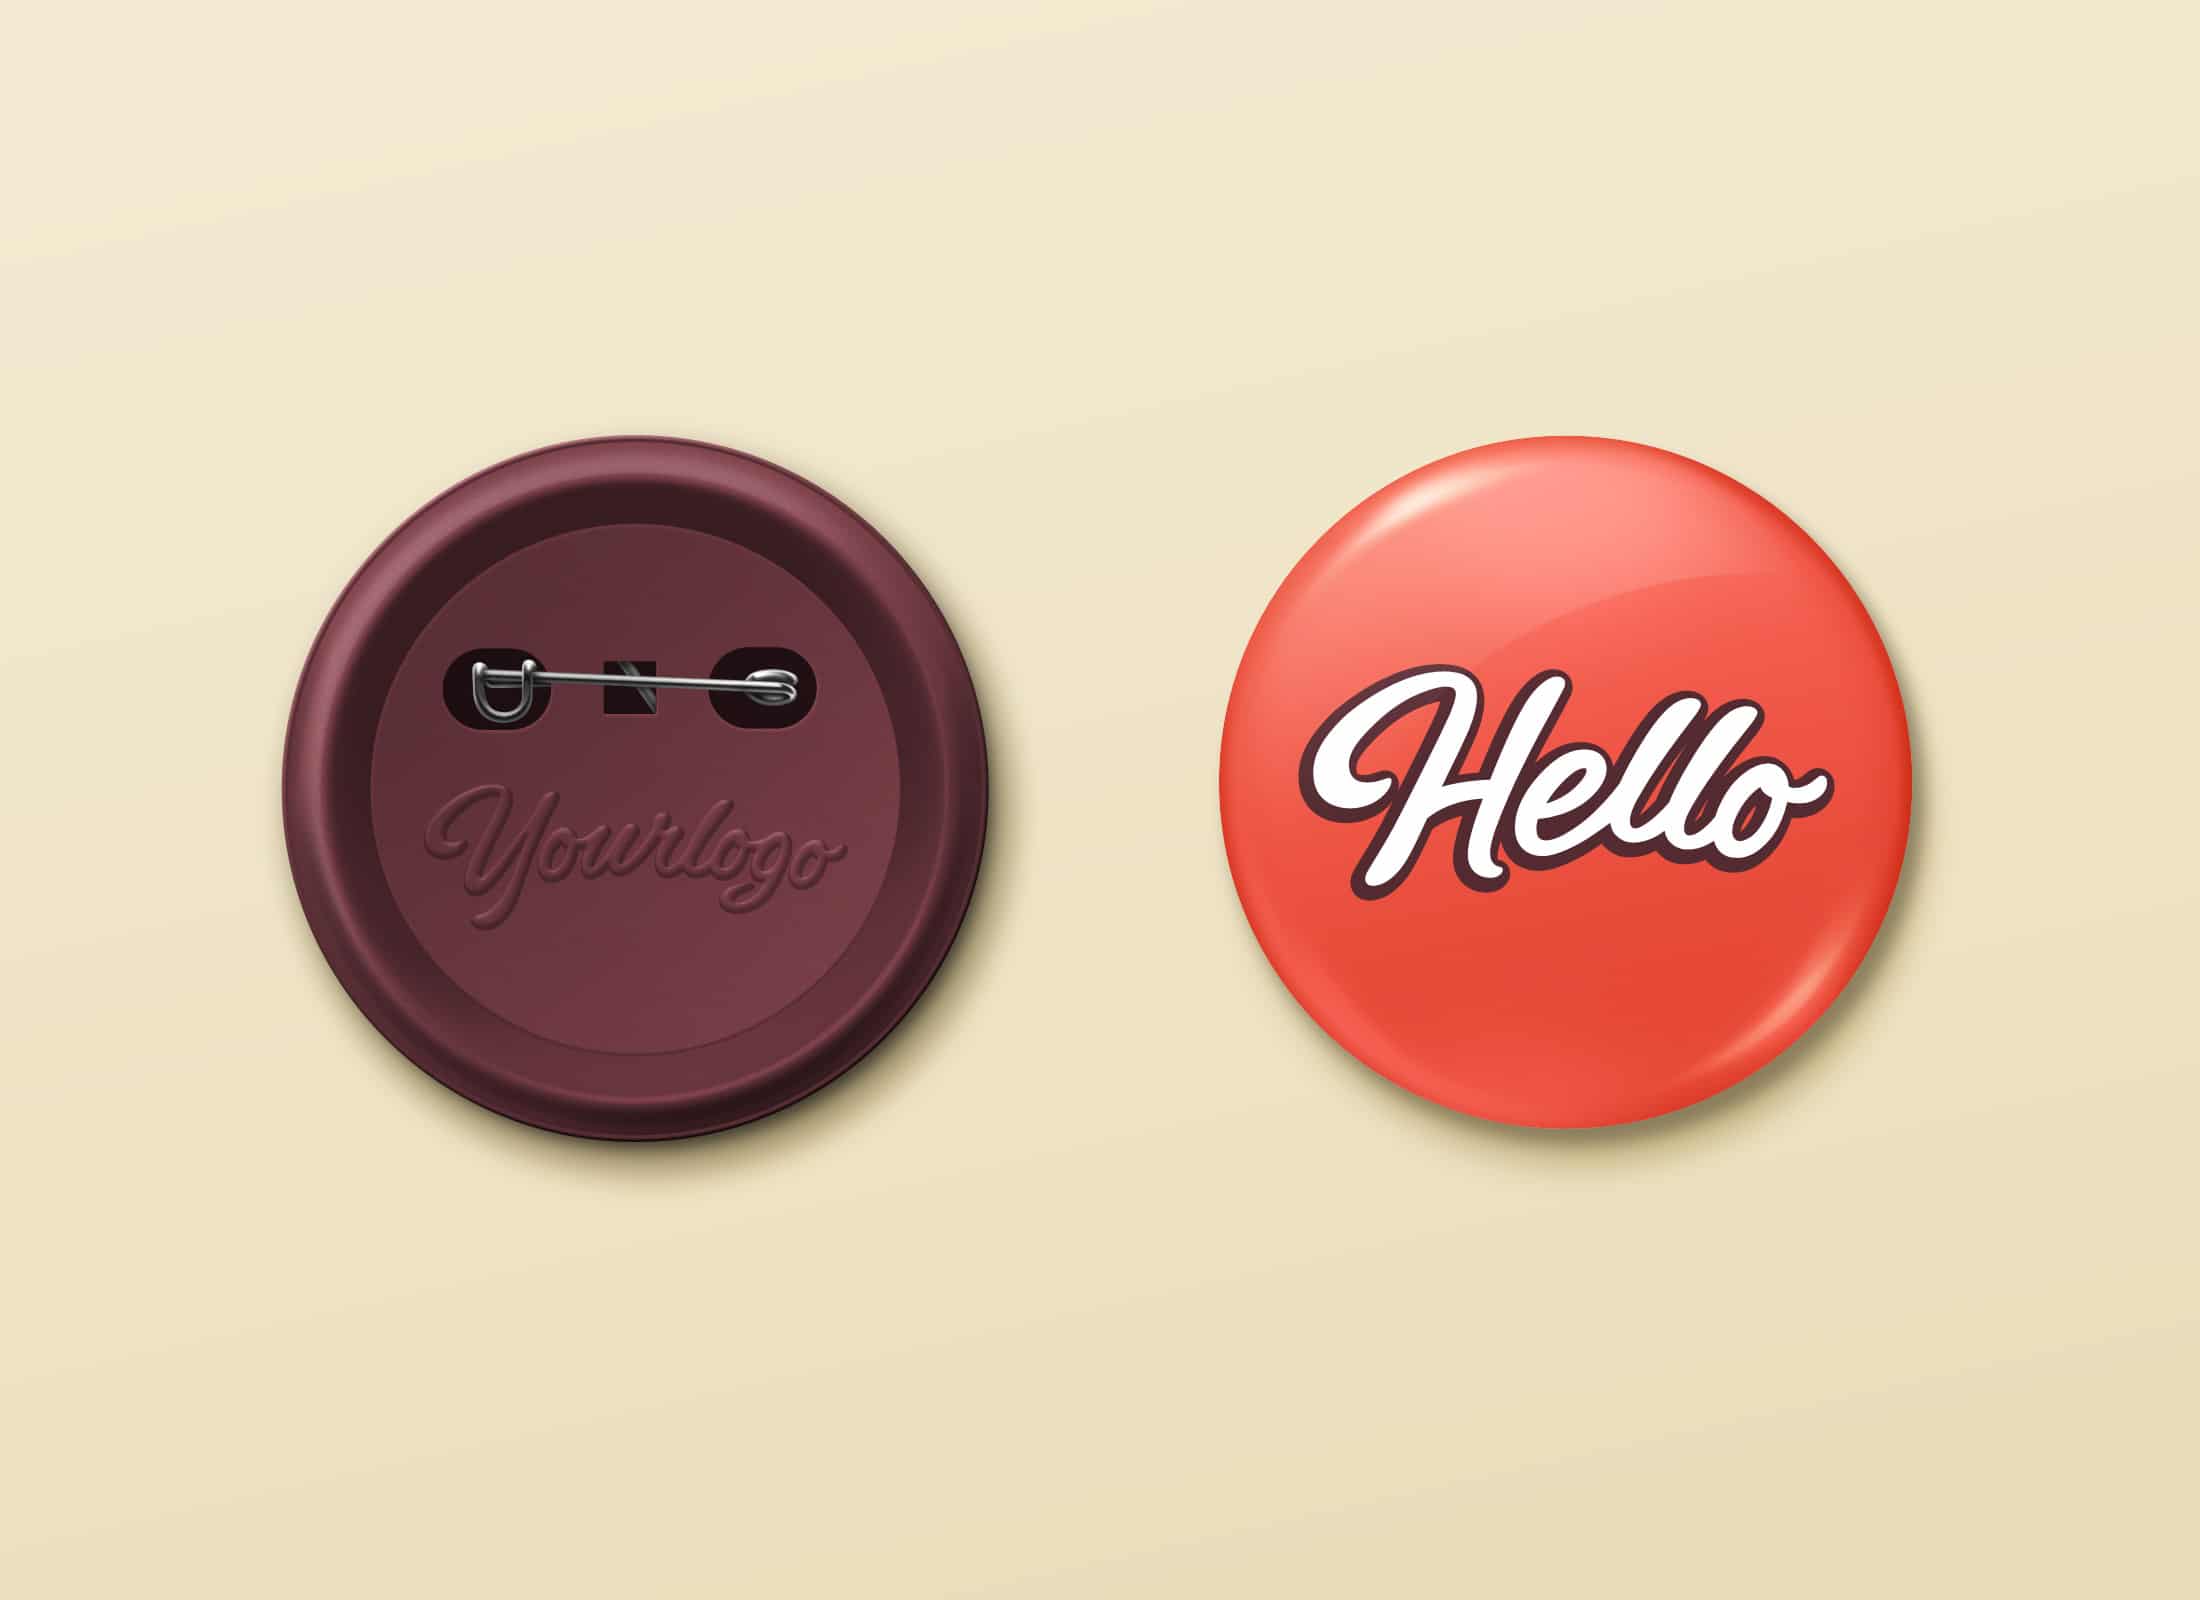 Button Pin Badge